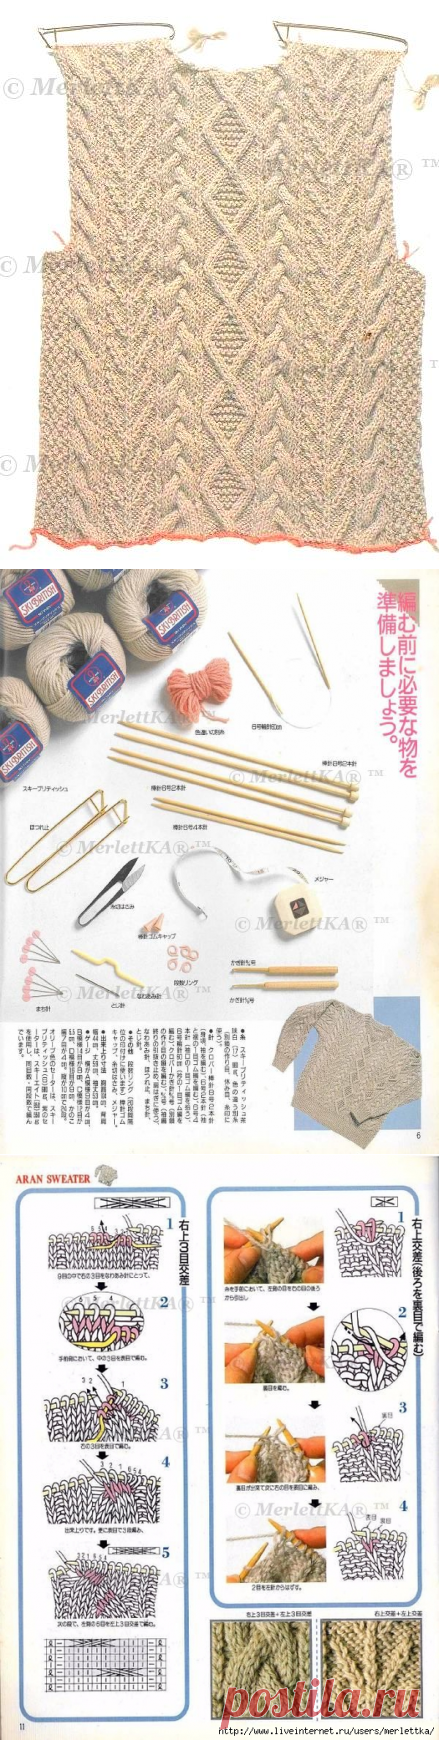 Подробная японская обучалка по вязанию кос (аранов) + кайма